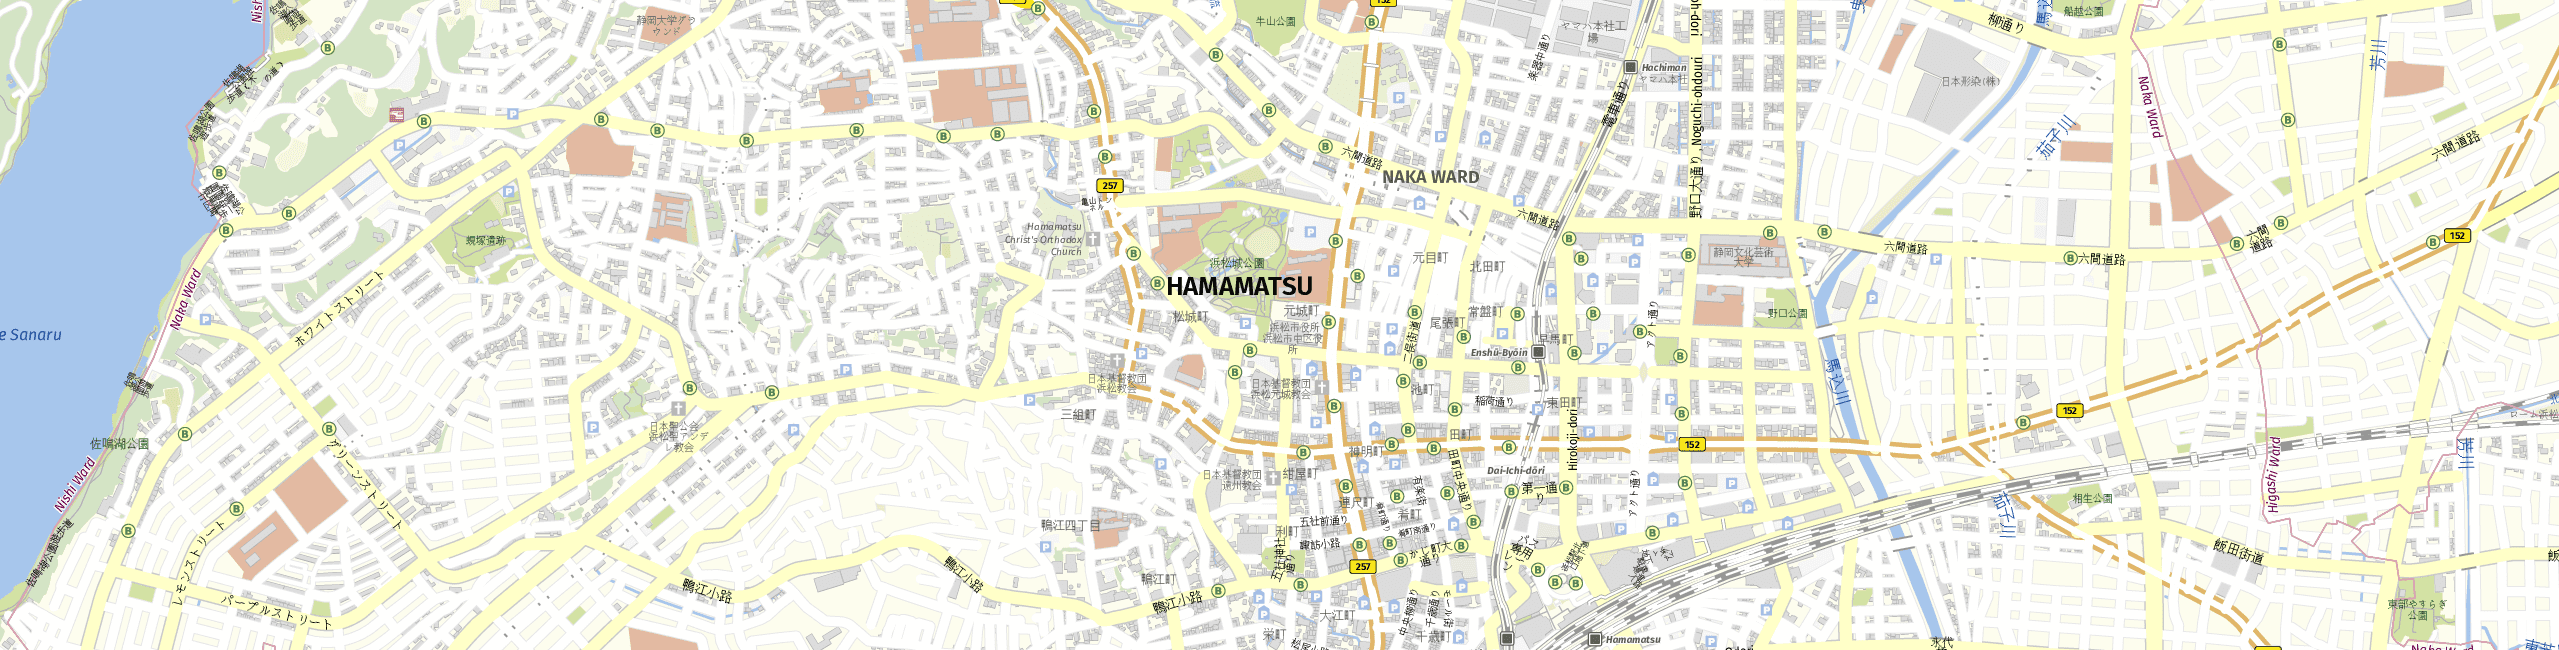 Stadtplan Hamamatsu zum Downloaden.